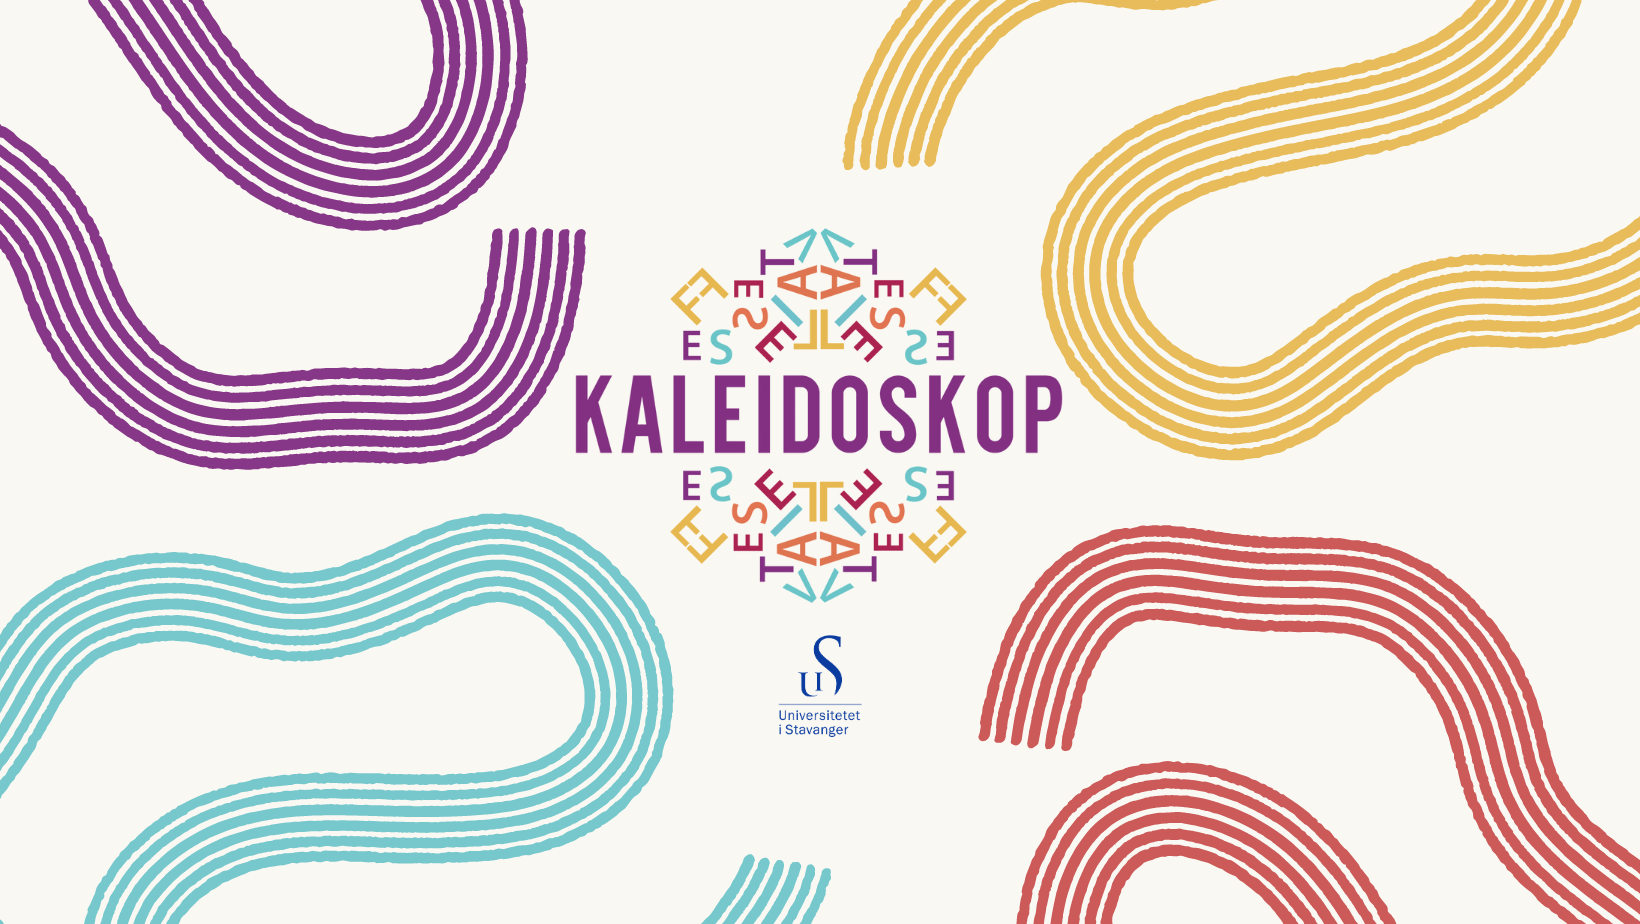 grafikk med logo til kaleidoskop og uis